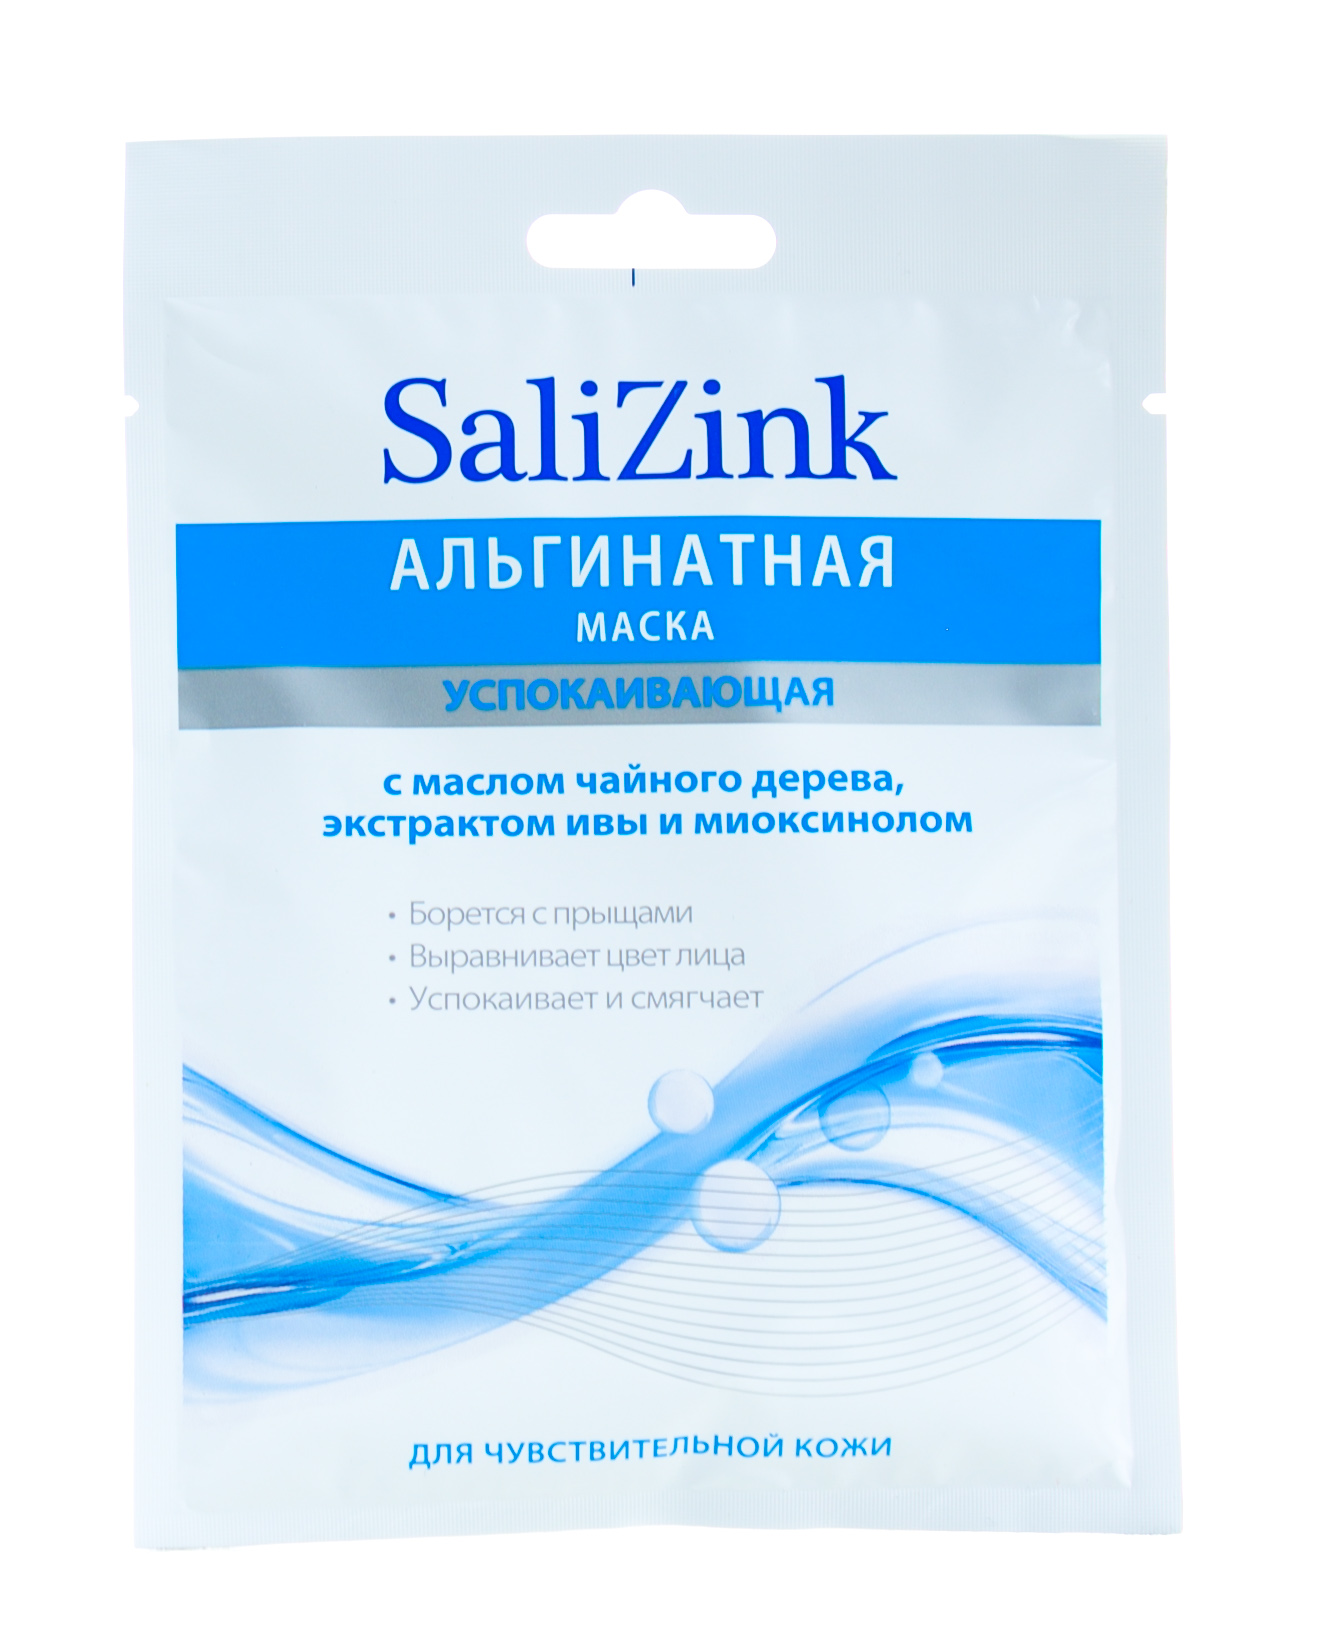 Salizink Маска для лица успокаивающая с маслом чайного дерева, экстрактом ивы и миоксинолом, 25 г (Salizink, Уход)